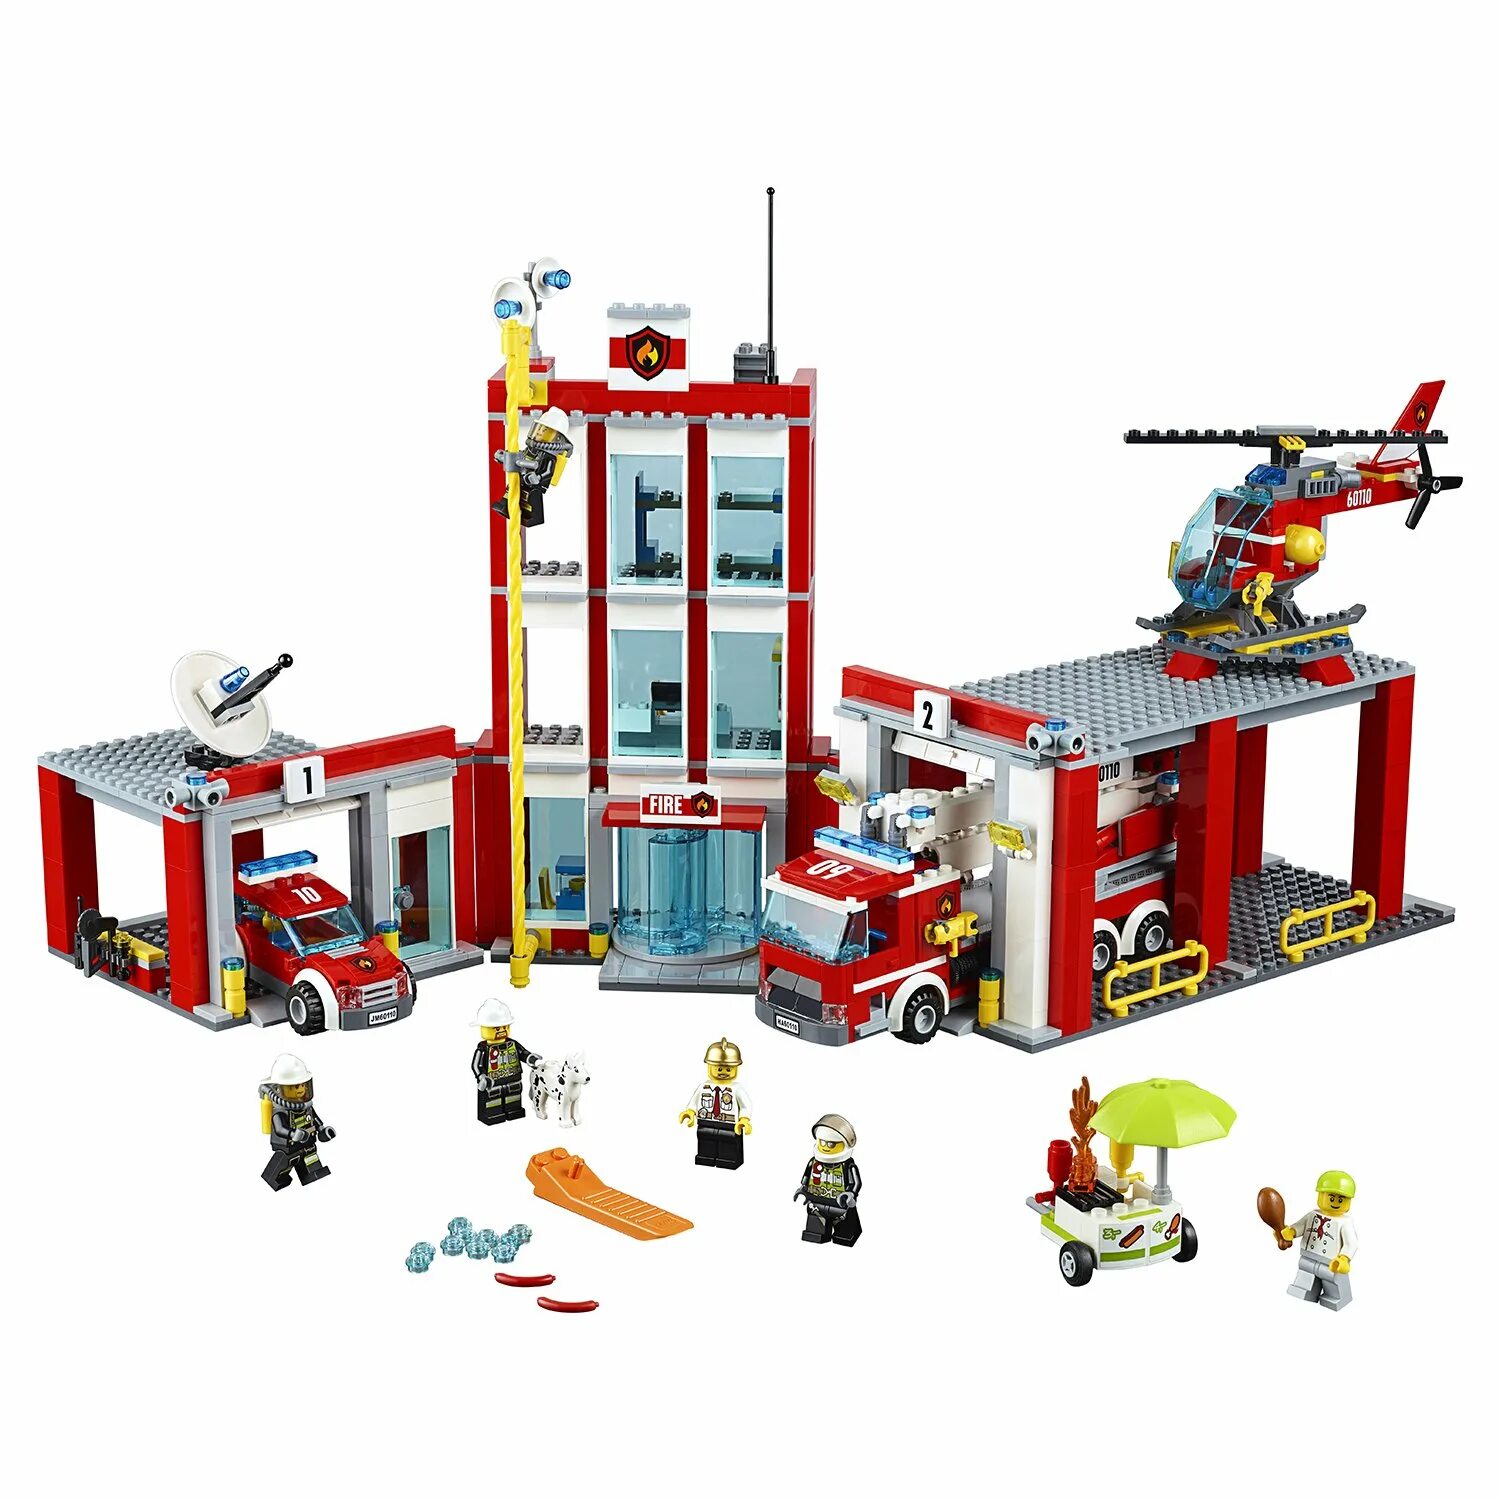 Сити пожарная. Лего Сити 60110. LEGO City Fire Station 60110. LEGO City 60110. LEGO City пожарная станция 60110.